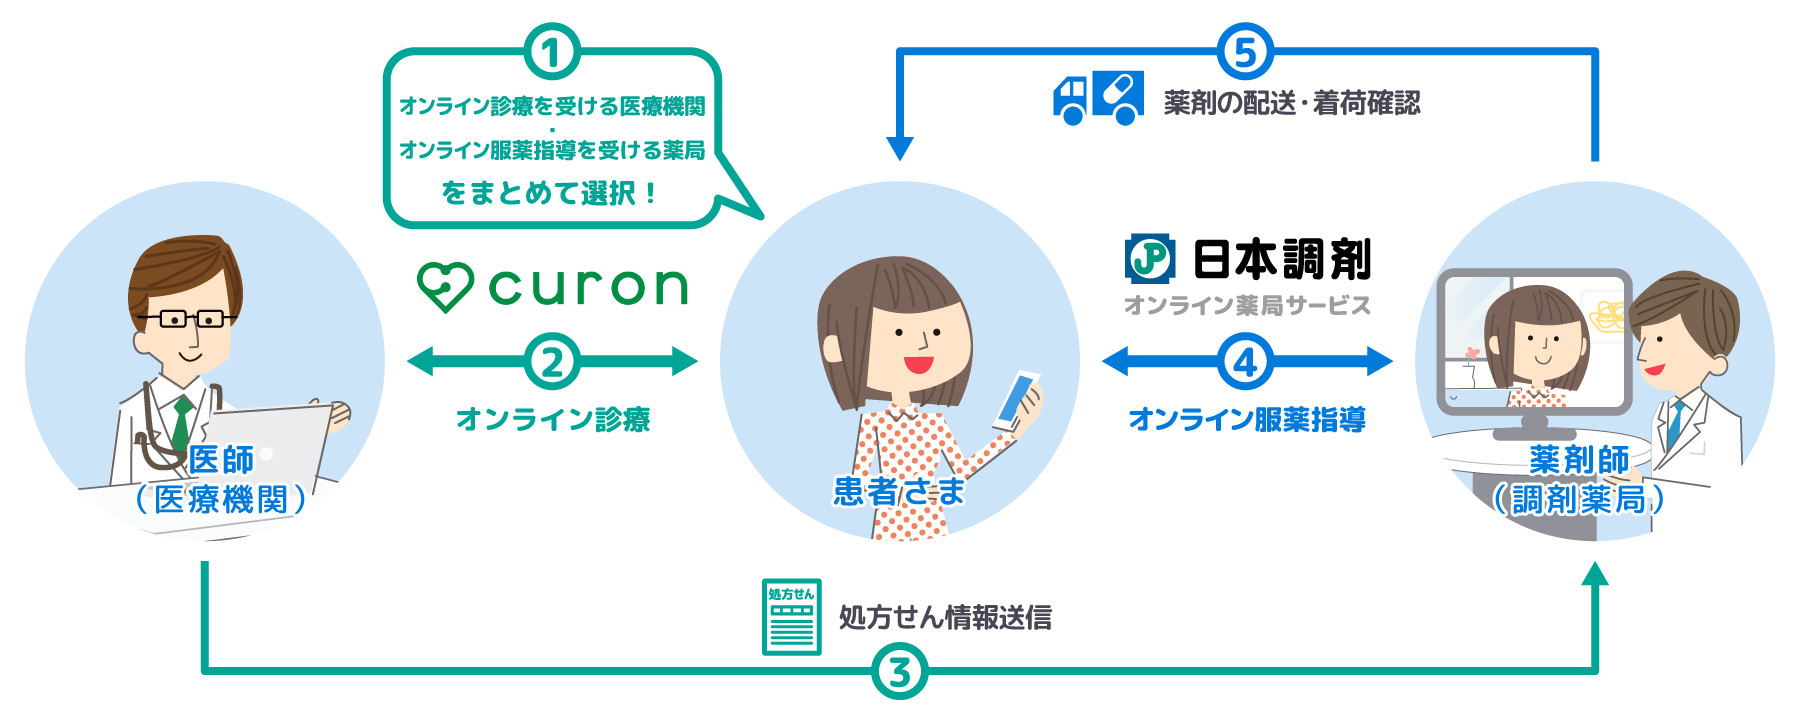 日本調剤、MICINと連携へ 全国の店舗でオンライン診療からオンライン